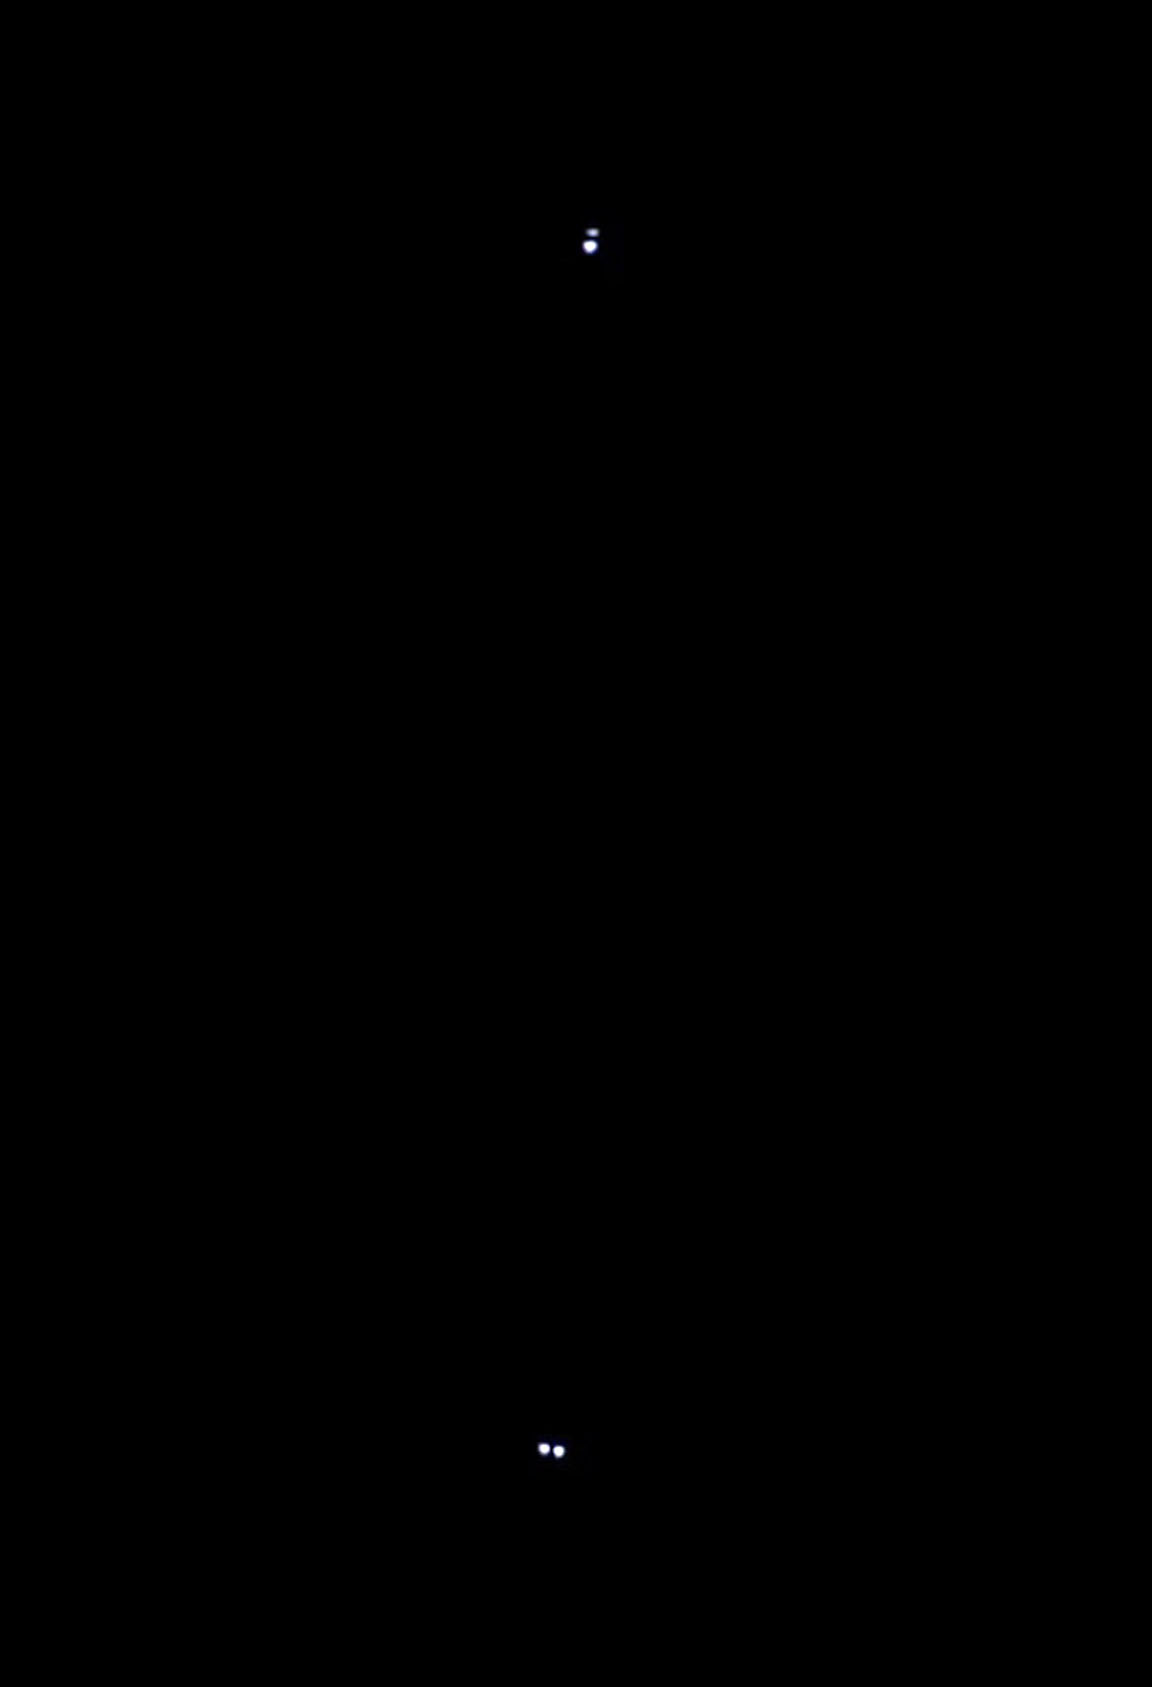 Zdjęcie pokazuje teleskopowy obraz gwiazdy Podwójno-Podwójnej w Lutni: na górze znajduje się Epsilon 1 (Σ2382), na dole Epsilon 2 (Σ2383). Źródło: Michael Boyle